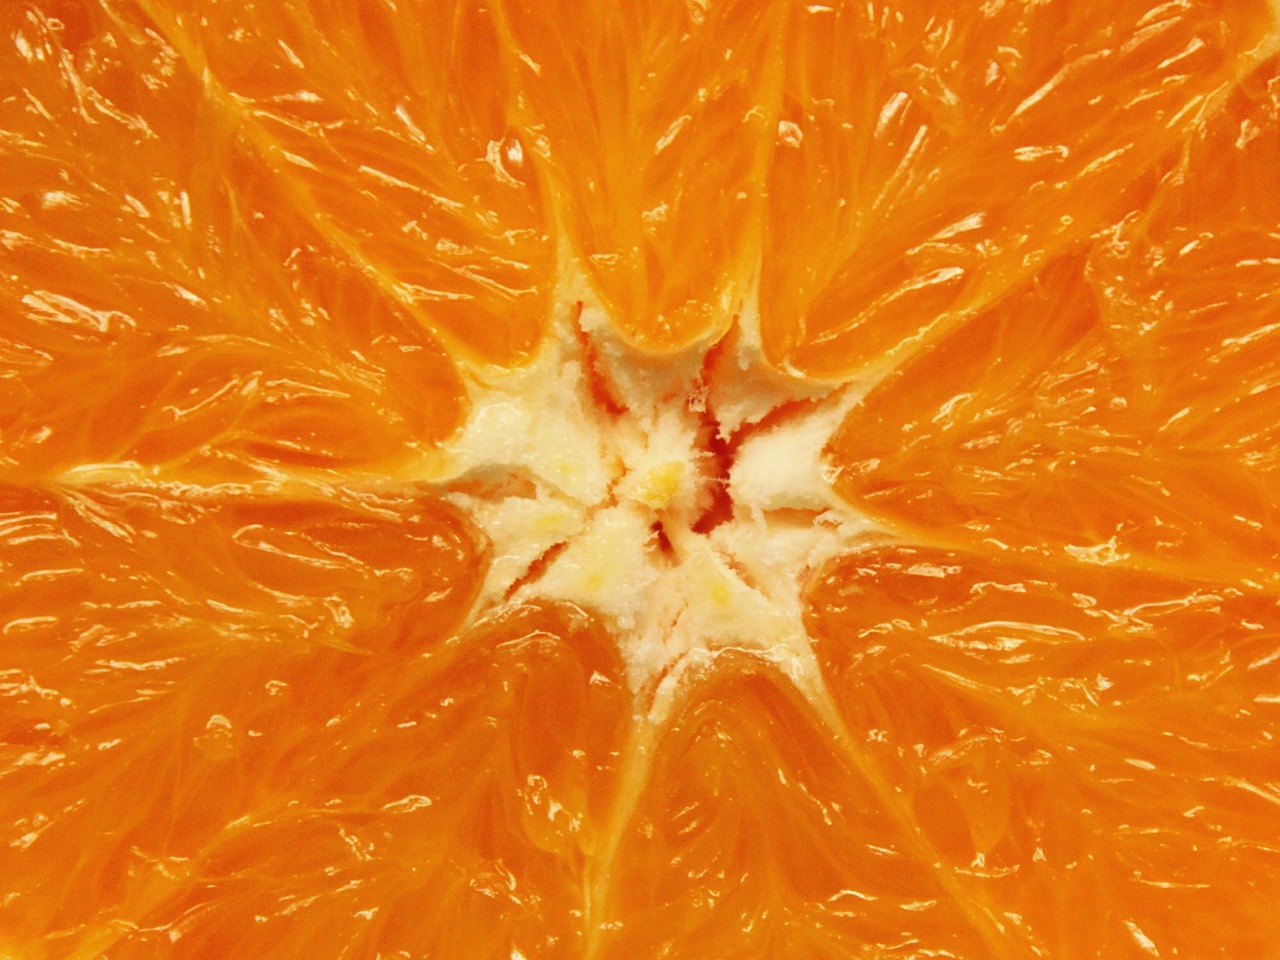 Oranžinė, Citrusinis Vaisius, Vaisiai, Citrusiniai Vaisiai, Frisch, Sveikas, Vitaminai, Maistas, Į Sveikatą, Vitaminhaltig